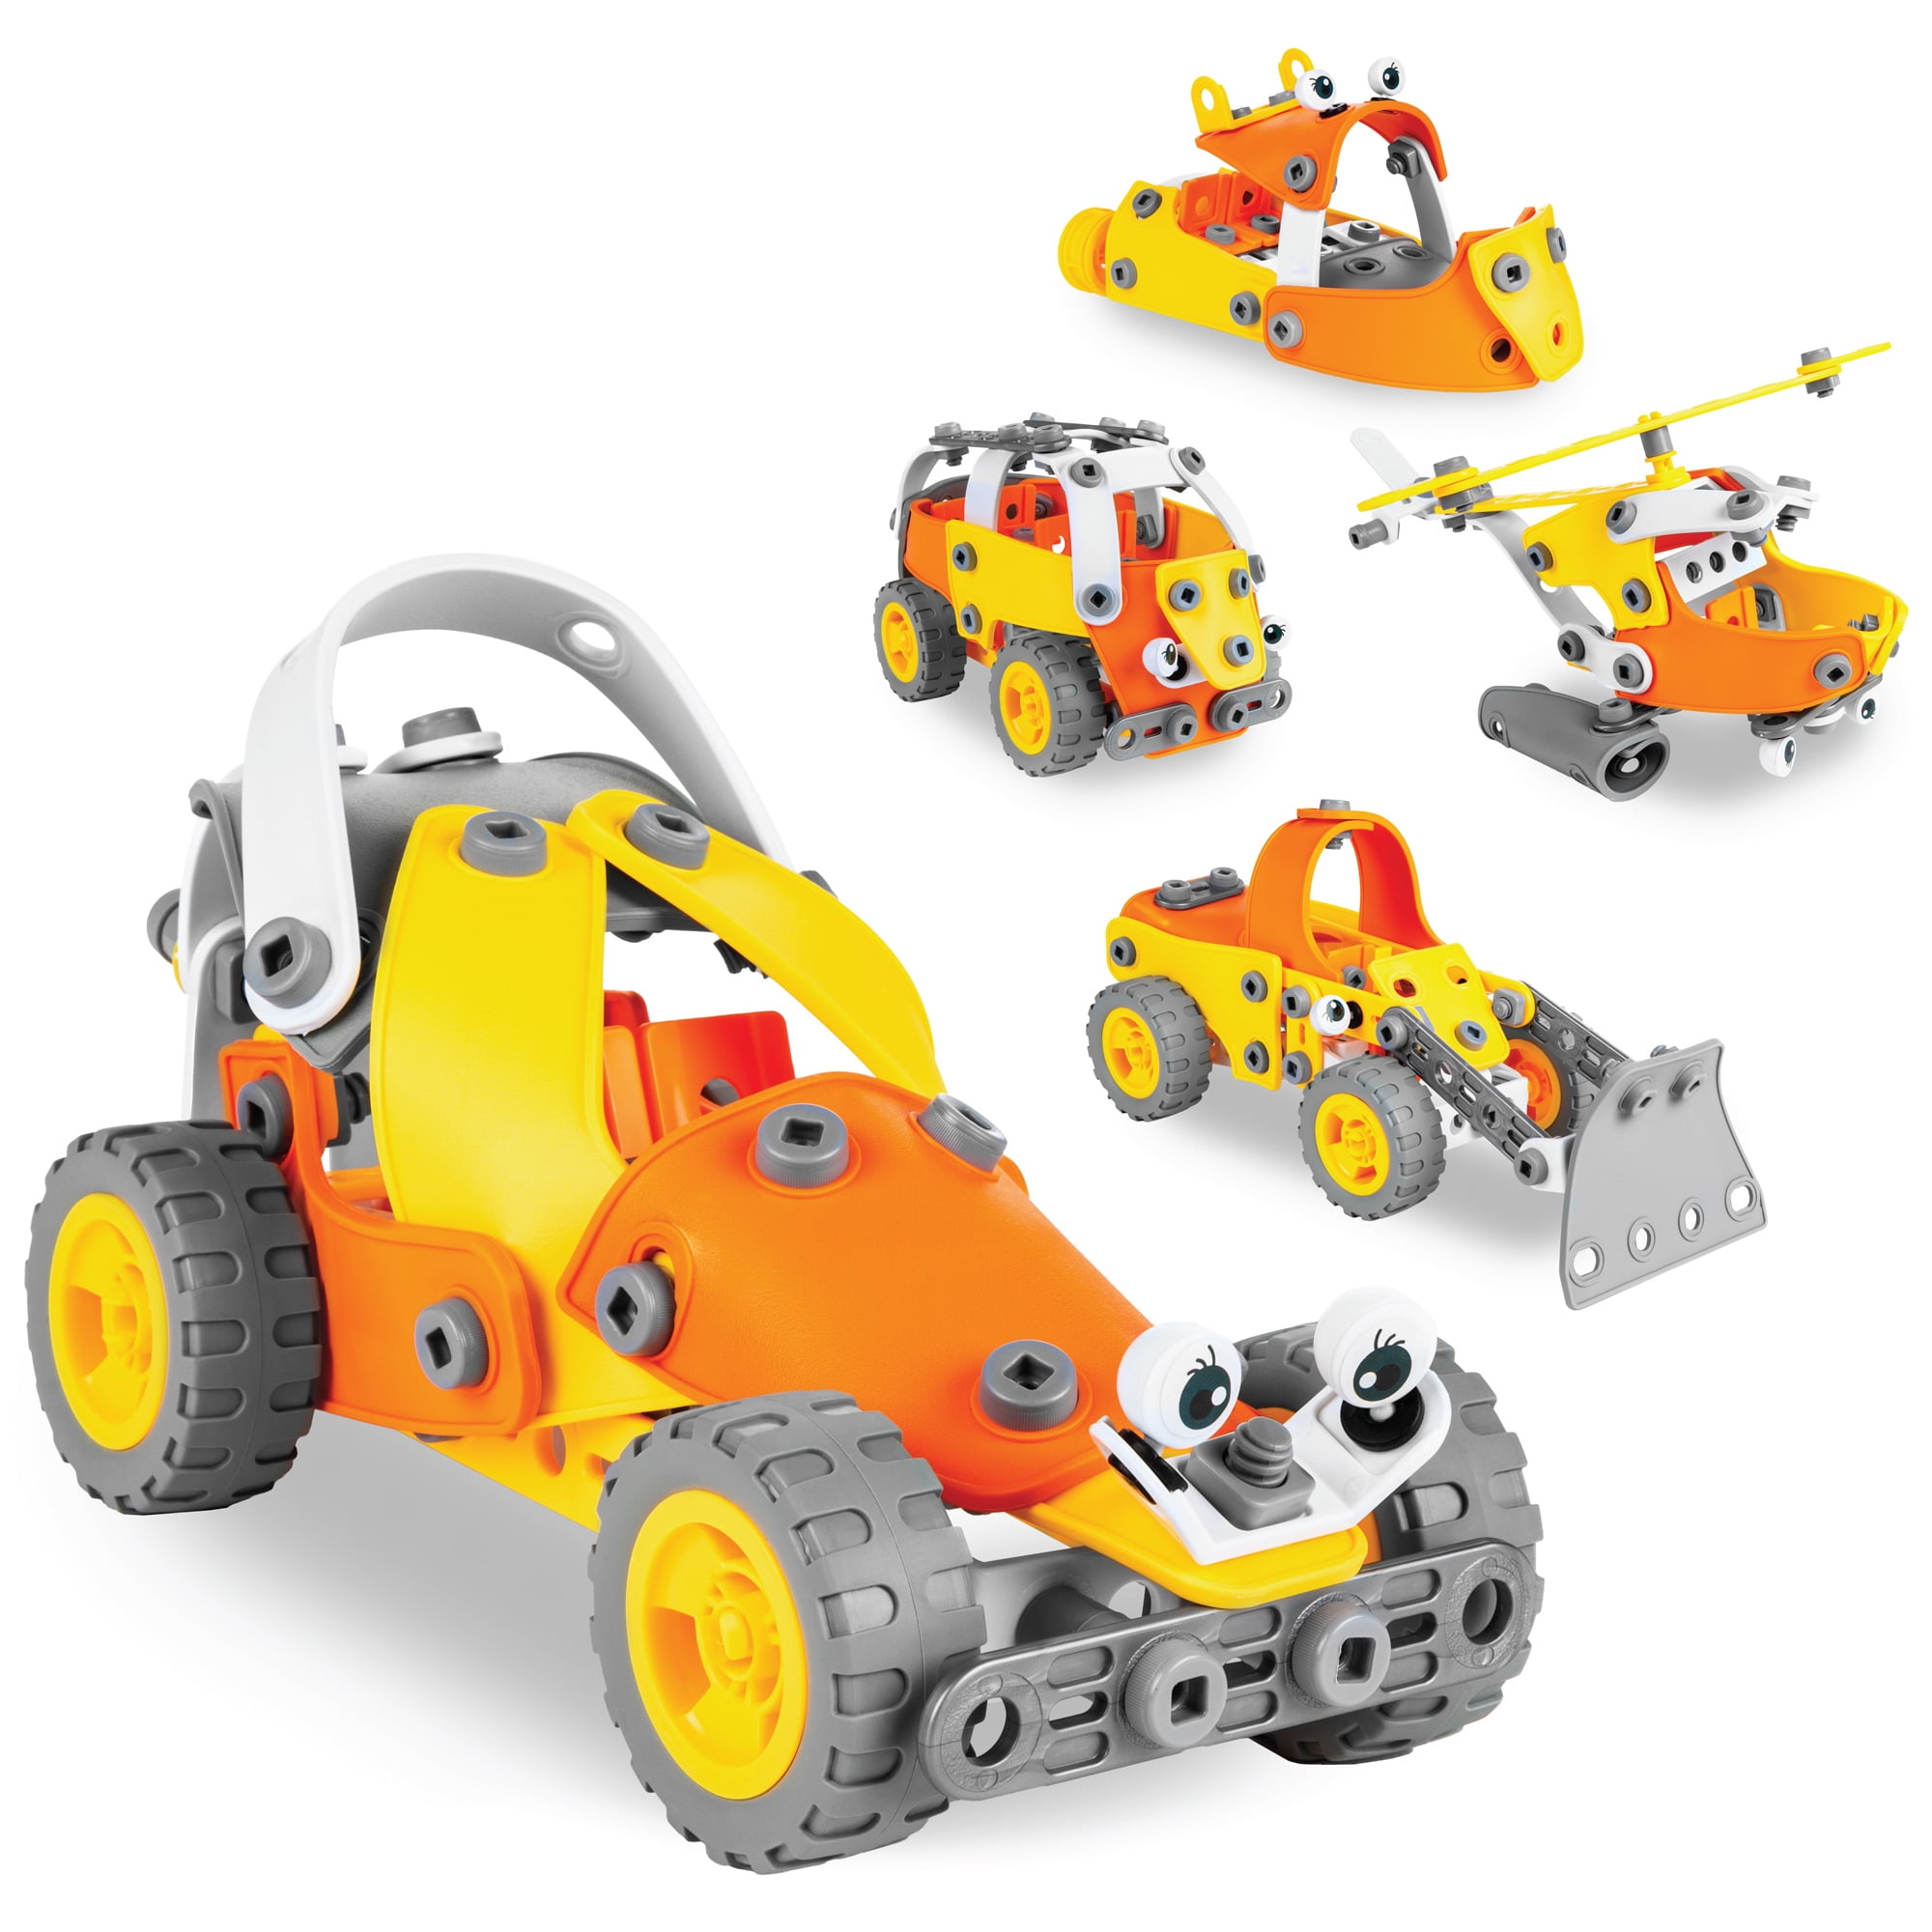 Details about   Intelligent Kids Toys Blocks Truck Building Technic Granite 3647 Pcs Car Sets 